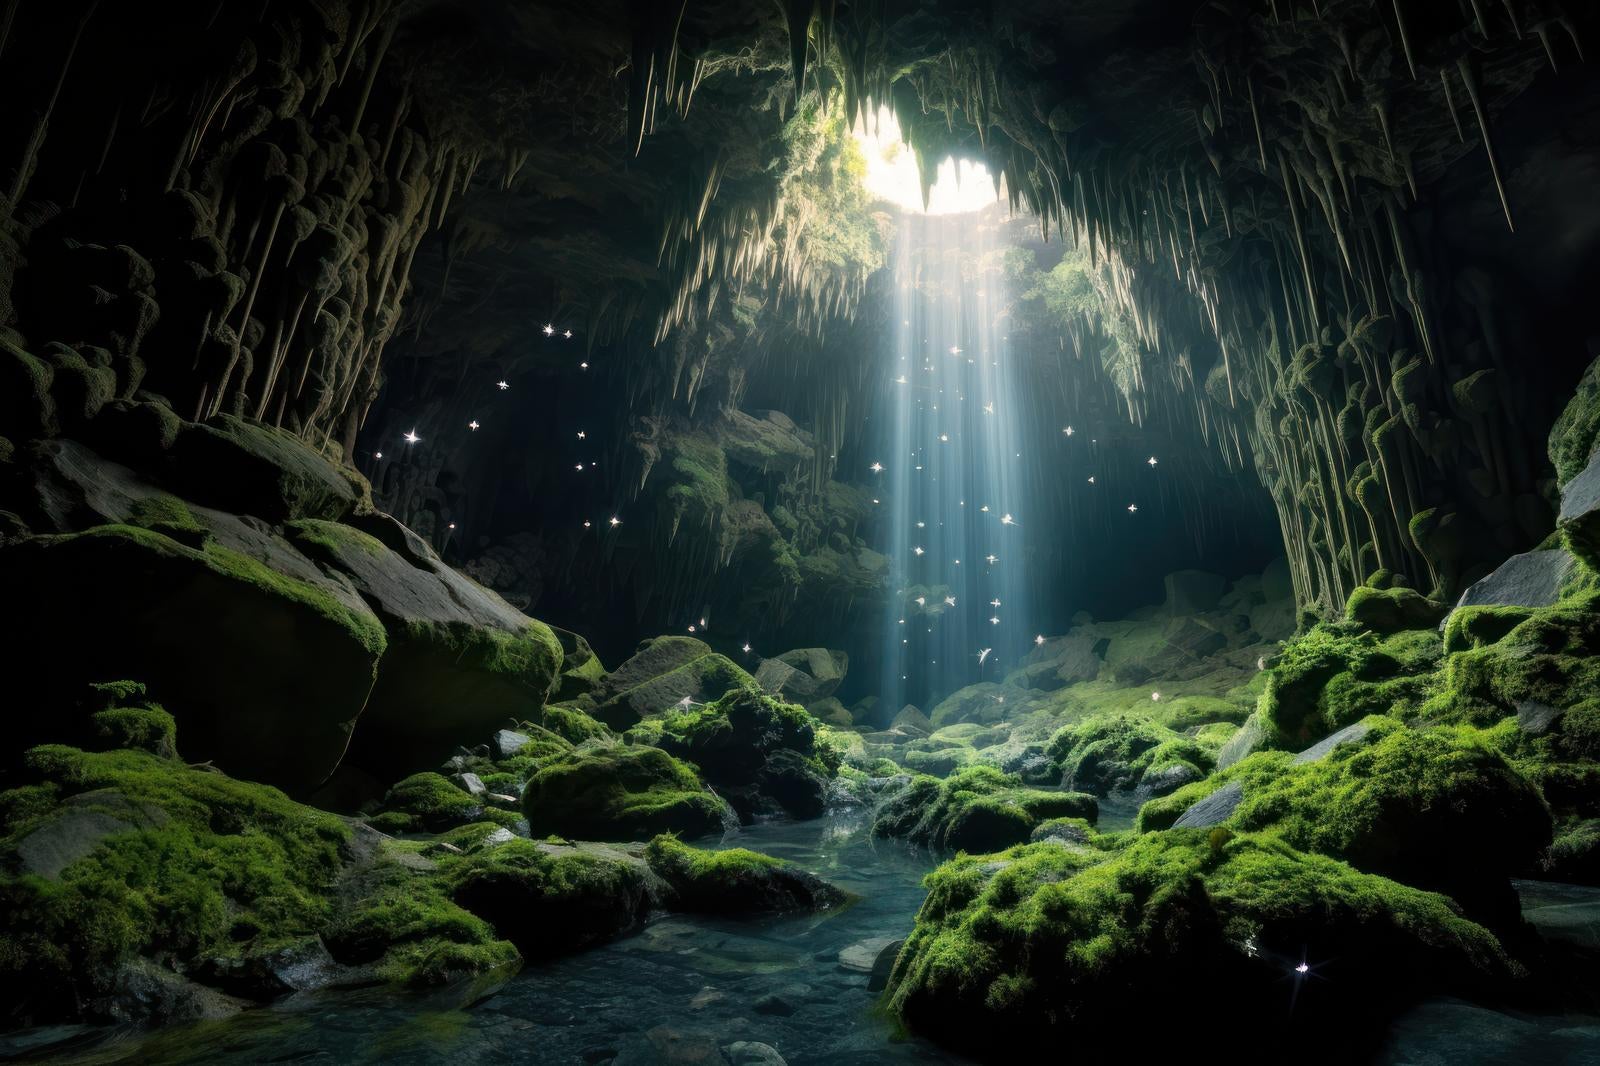 「水脈の鍾乳洞 天使の梯子と地下世界の風景」の写真